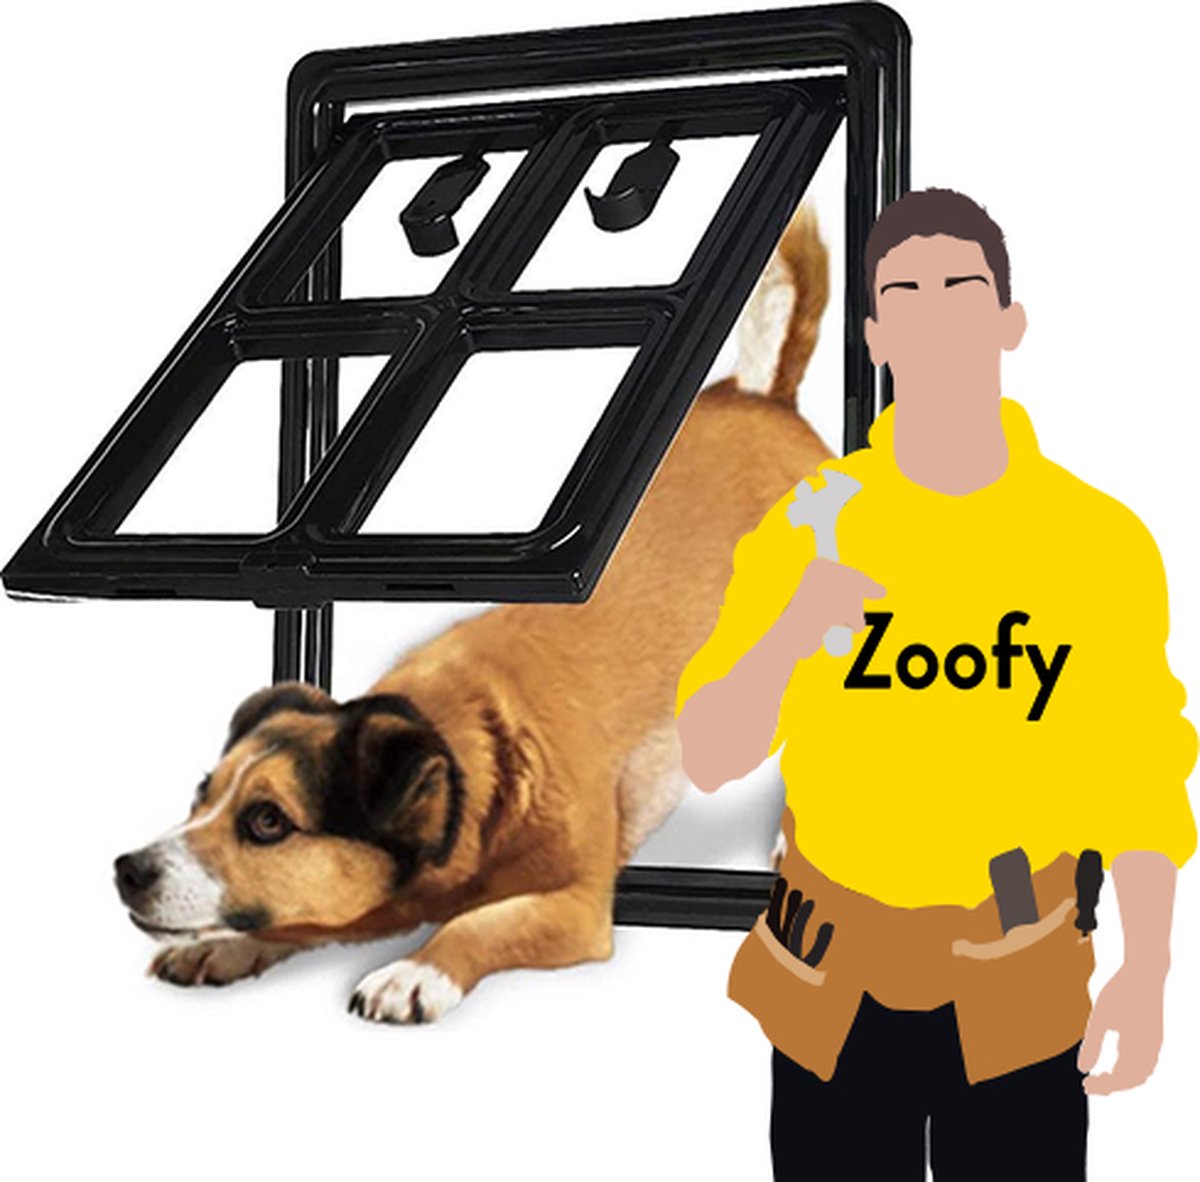 Plaatsen hondenluik - Door Zoofy in samenwerking met bol.com -  Installatie-afspraak... | bol.com